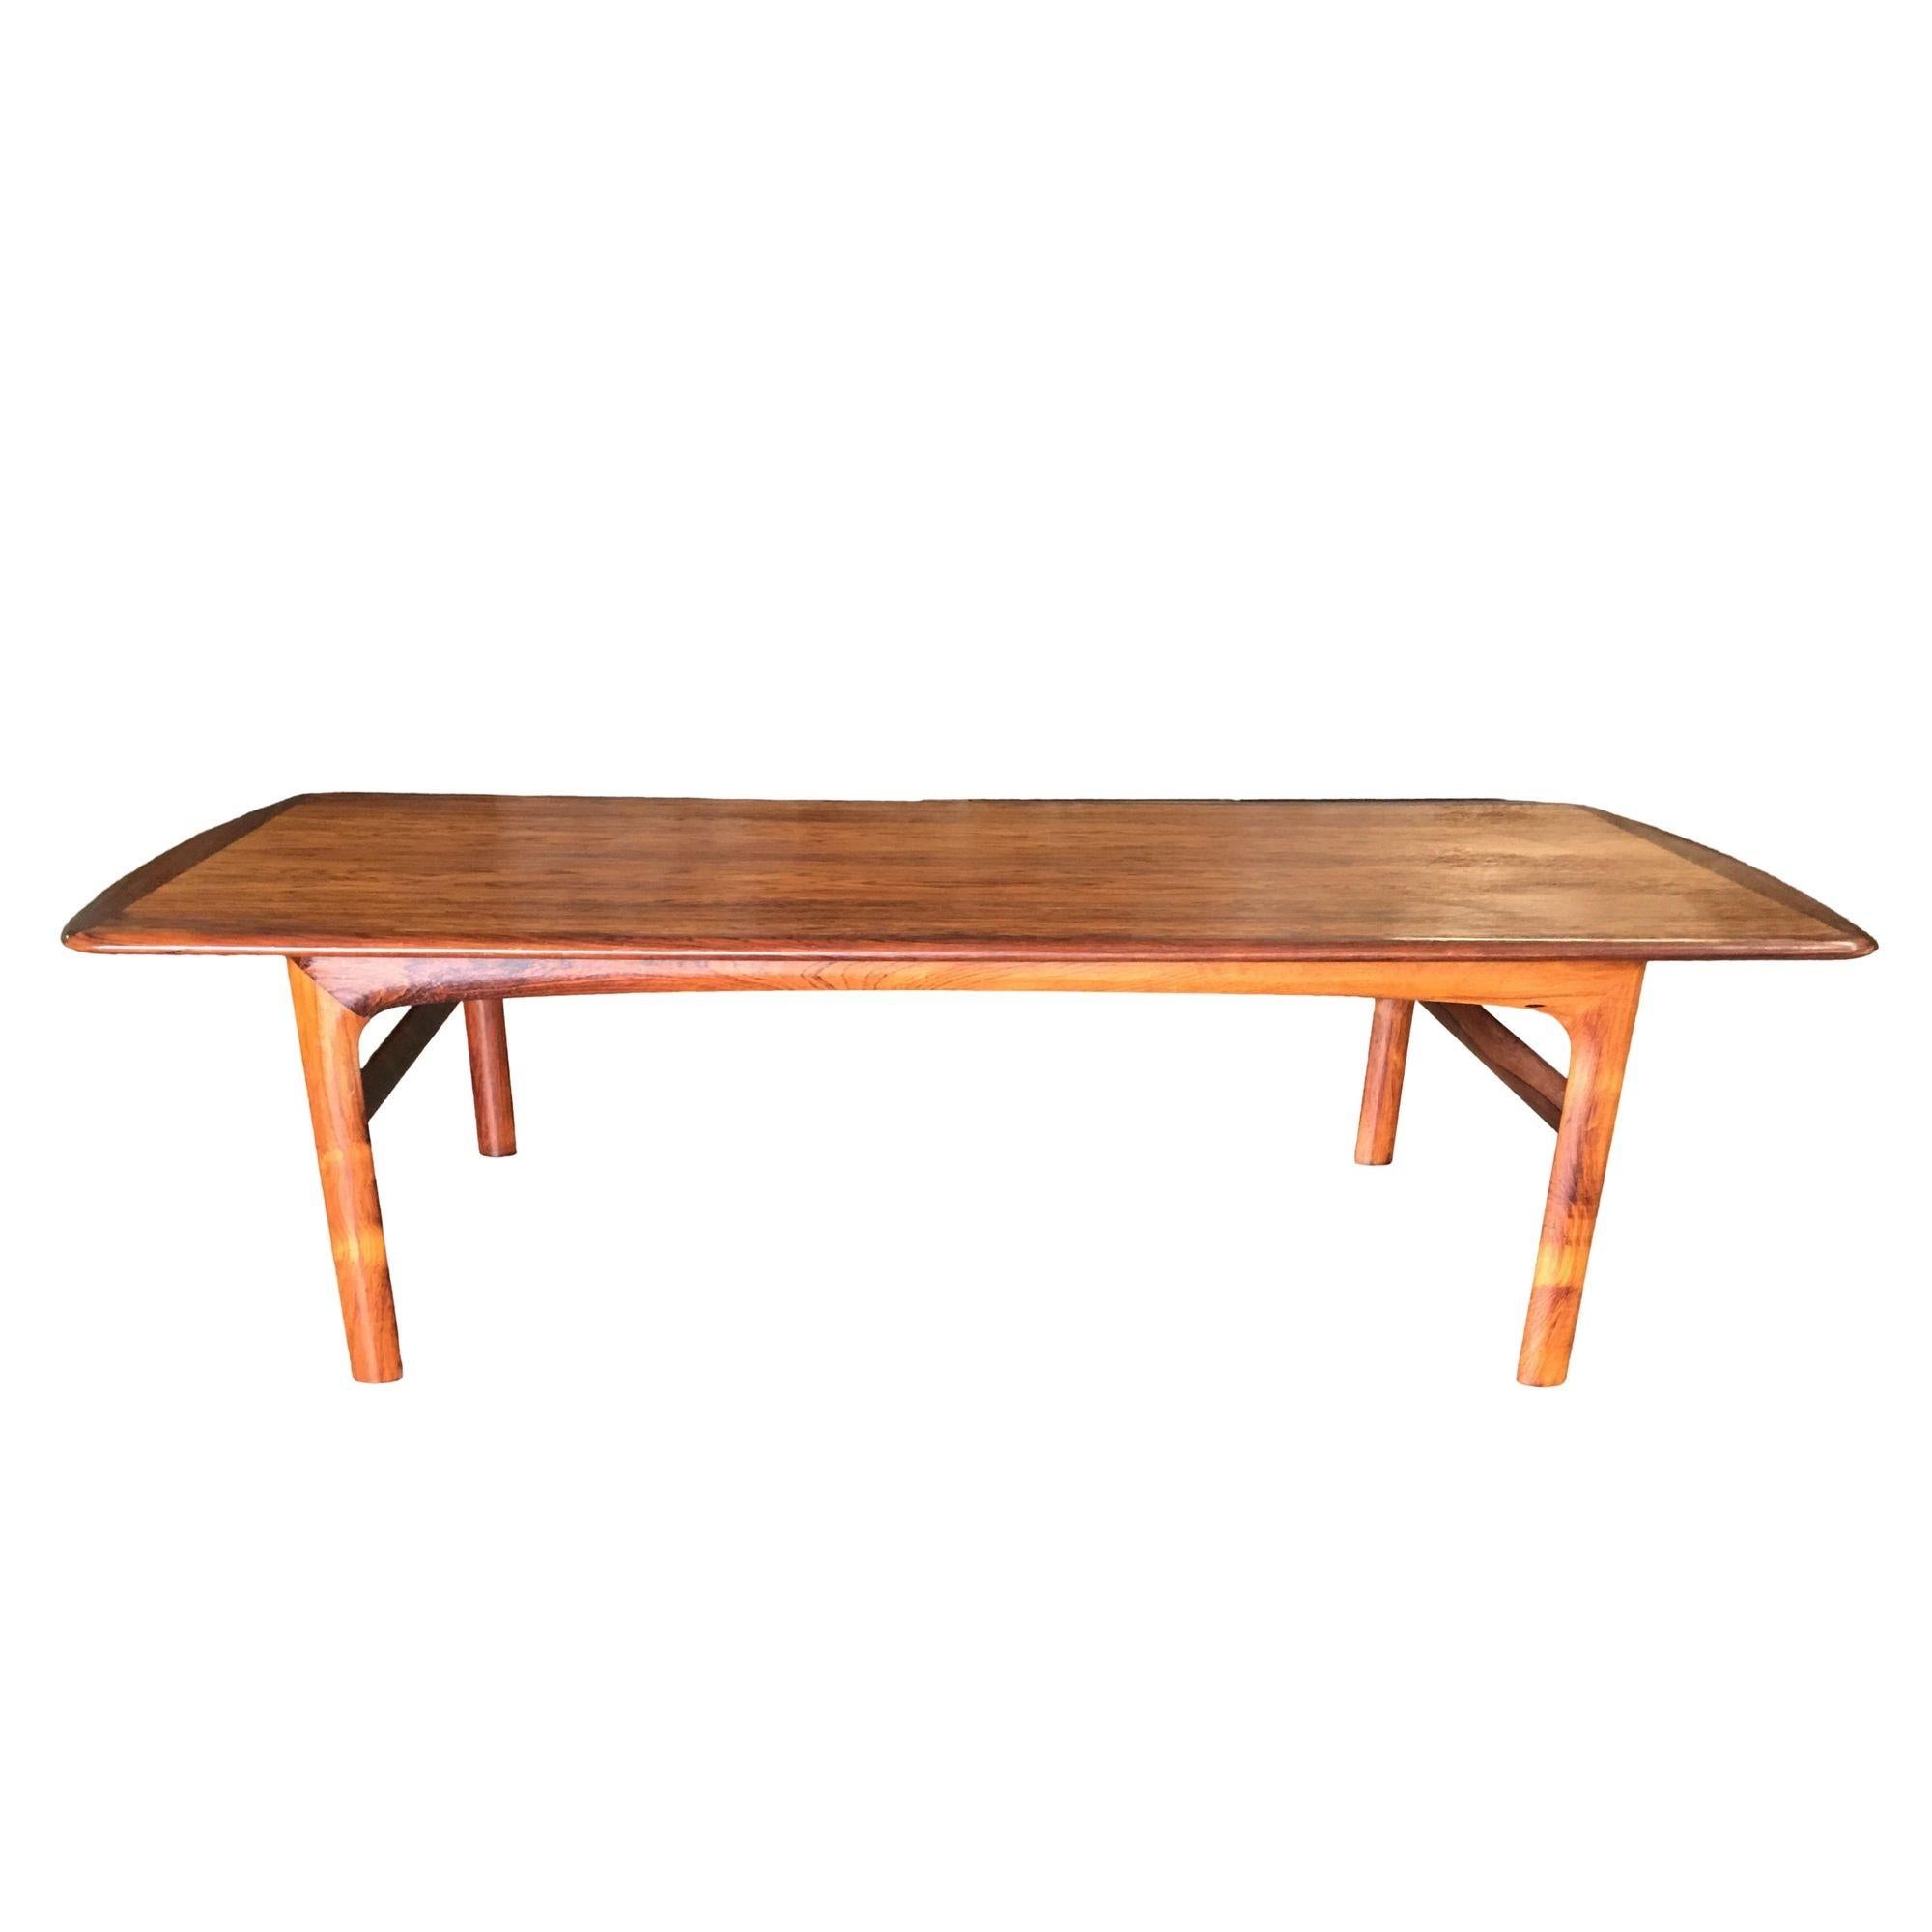 Table basse moderniste suédoise du milieu du siècle en bois de rose avec plateau bicolore incrusté par Folke Ohlsson.

Cet article comprend des matériaux à usage restreint et ne peut être vendu en dehors des États-Unis contigus.